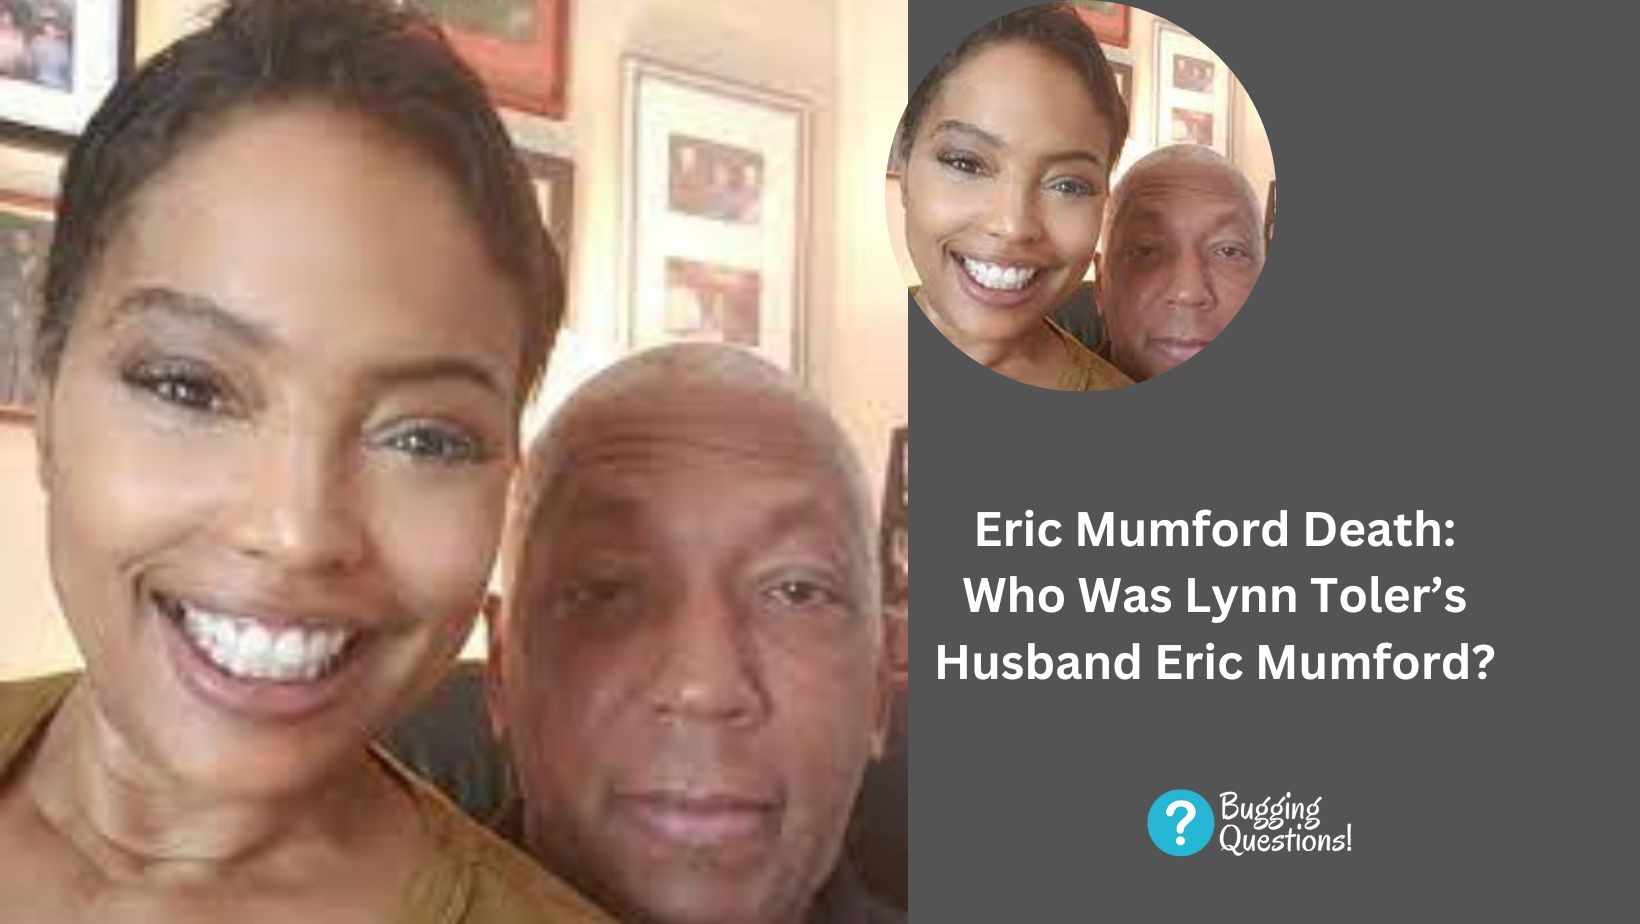 Eric Mumford Death: Who Was Lynn Toler’s Husband Eric Mumford?